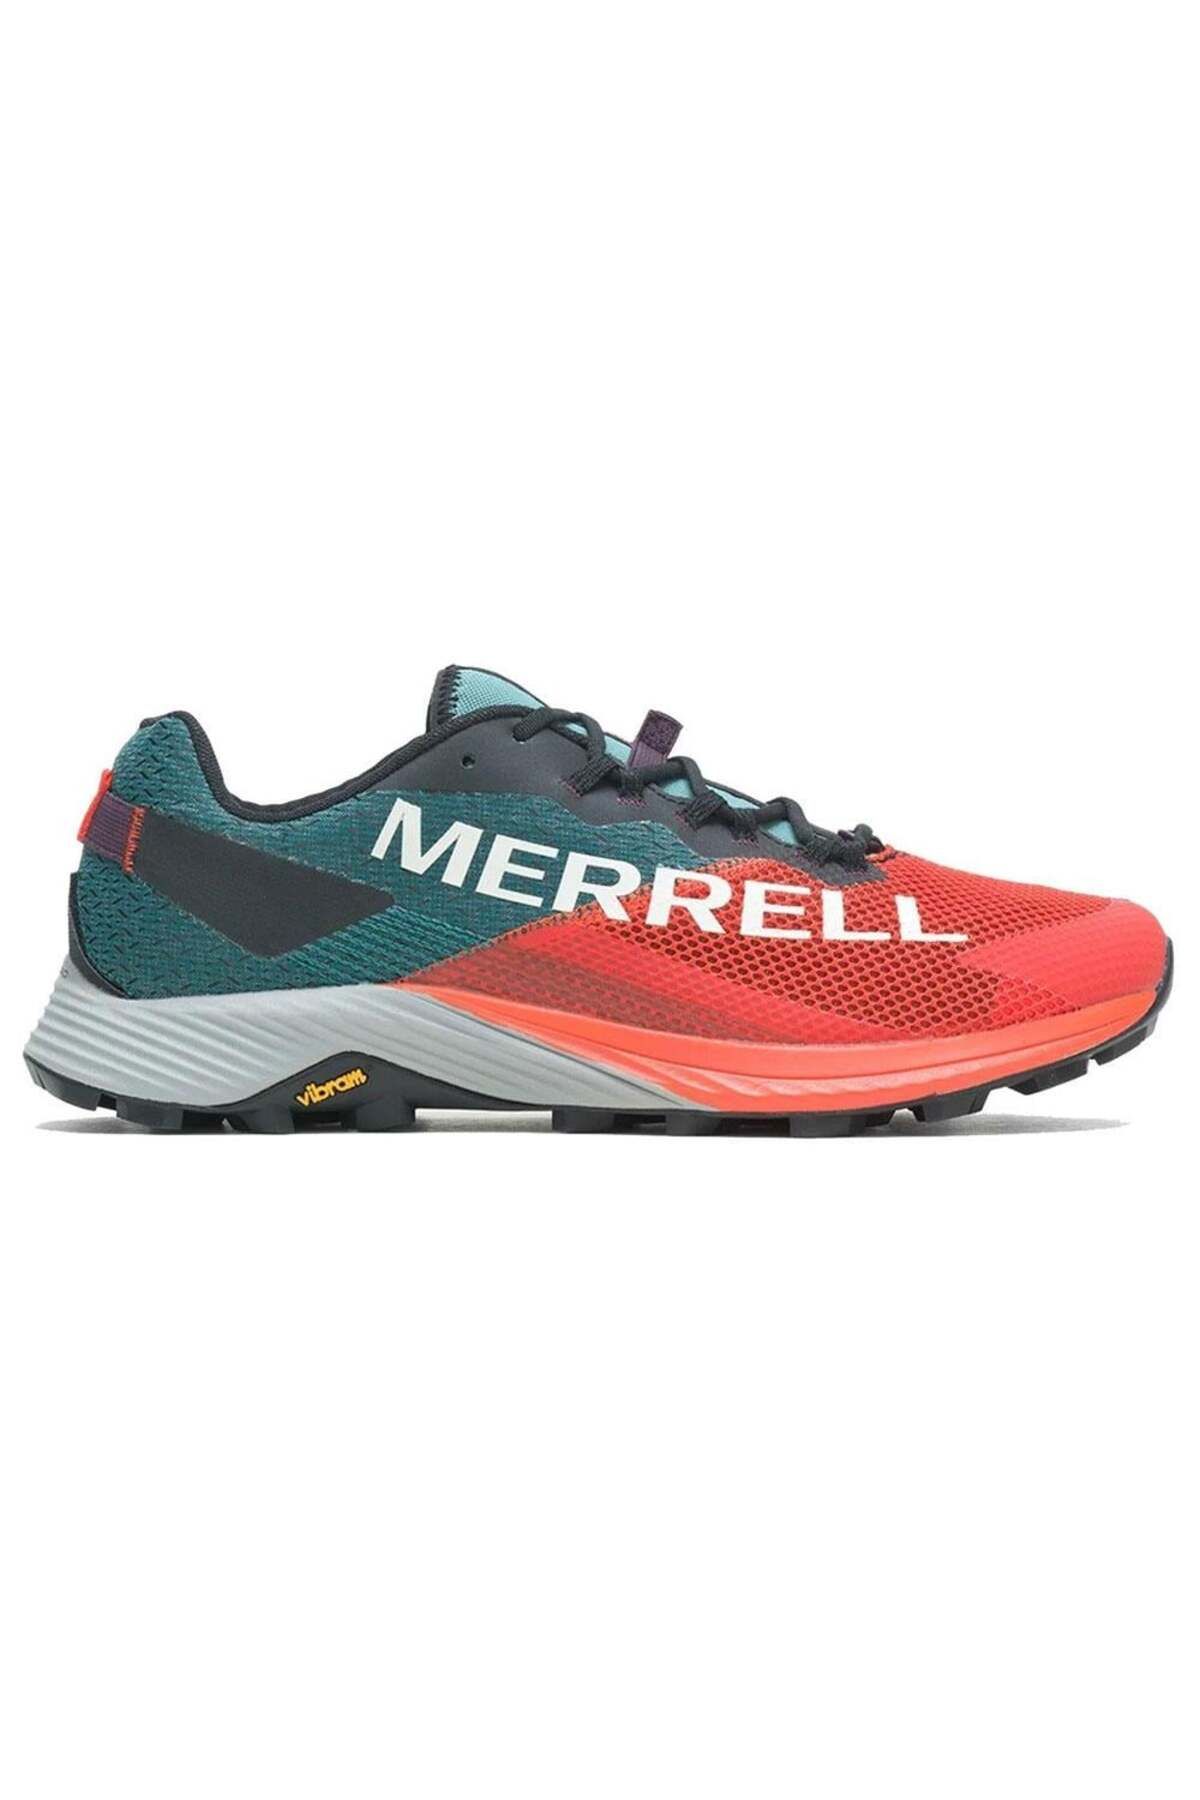 Merrell Mtl Long Sky 2 Erkek Spor Ayakkabısı J067141